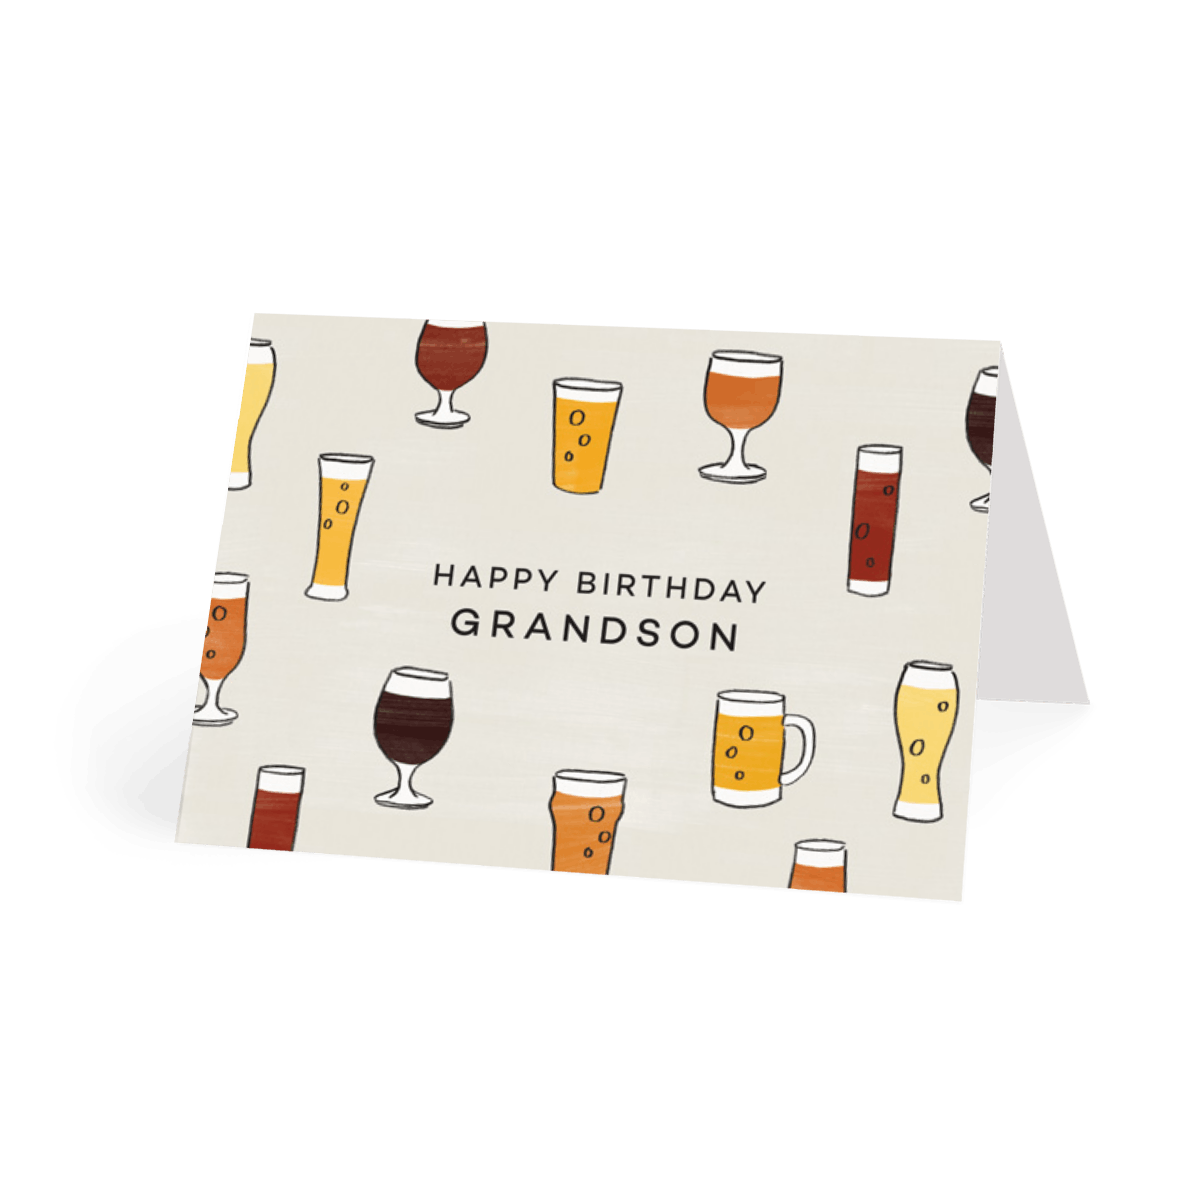 Birthday Beers Grandson